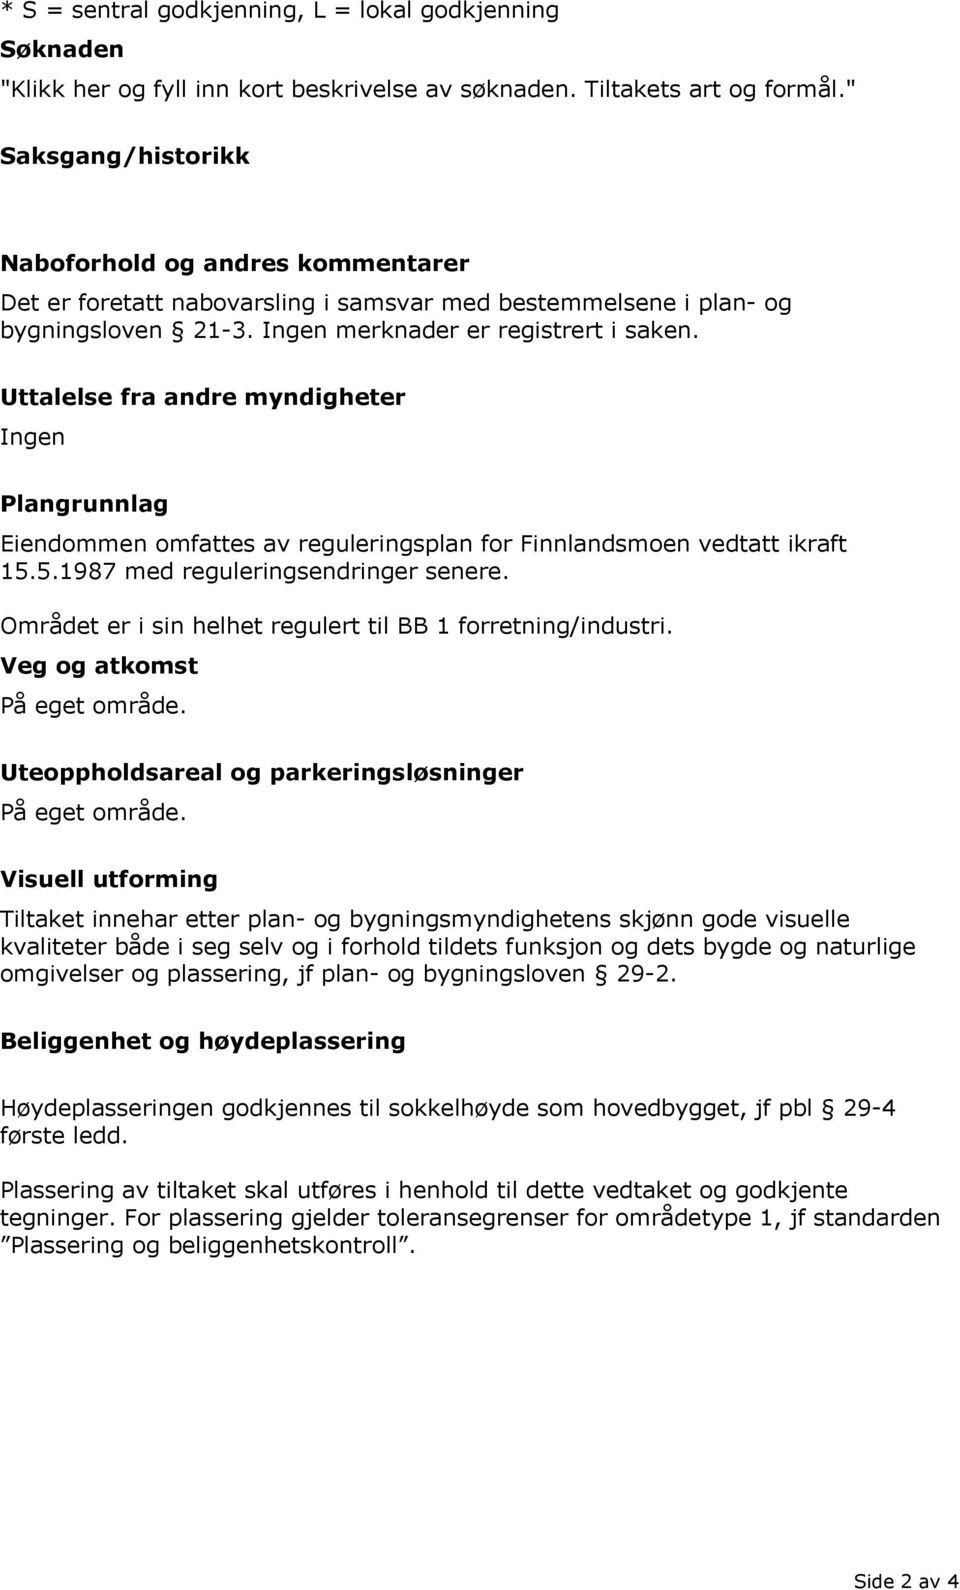 Uttalelse fra andre myndigheter Ingen Plangrunnlag Eiendommen omfattes av reguleringsplan for Finnlandsmoen vedtatt ikraft 15.5.1987 med reguleringsendringer senere.